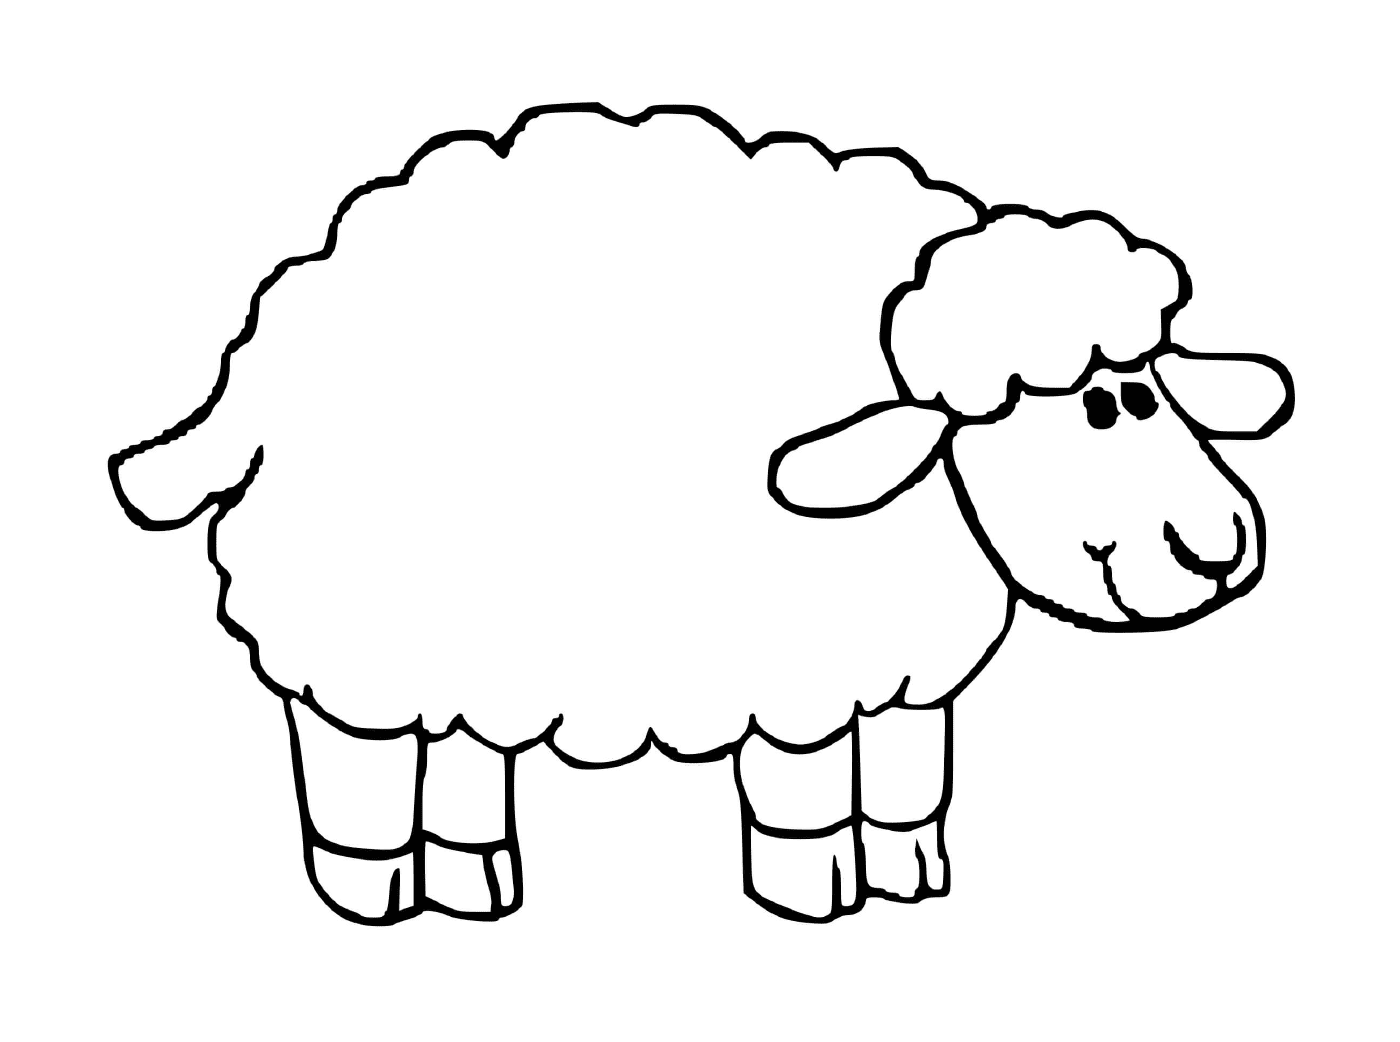  Pecore dall'aspetto amichevole 